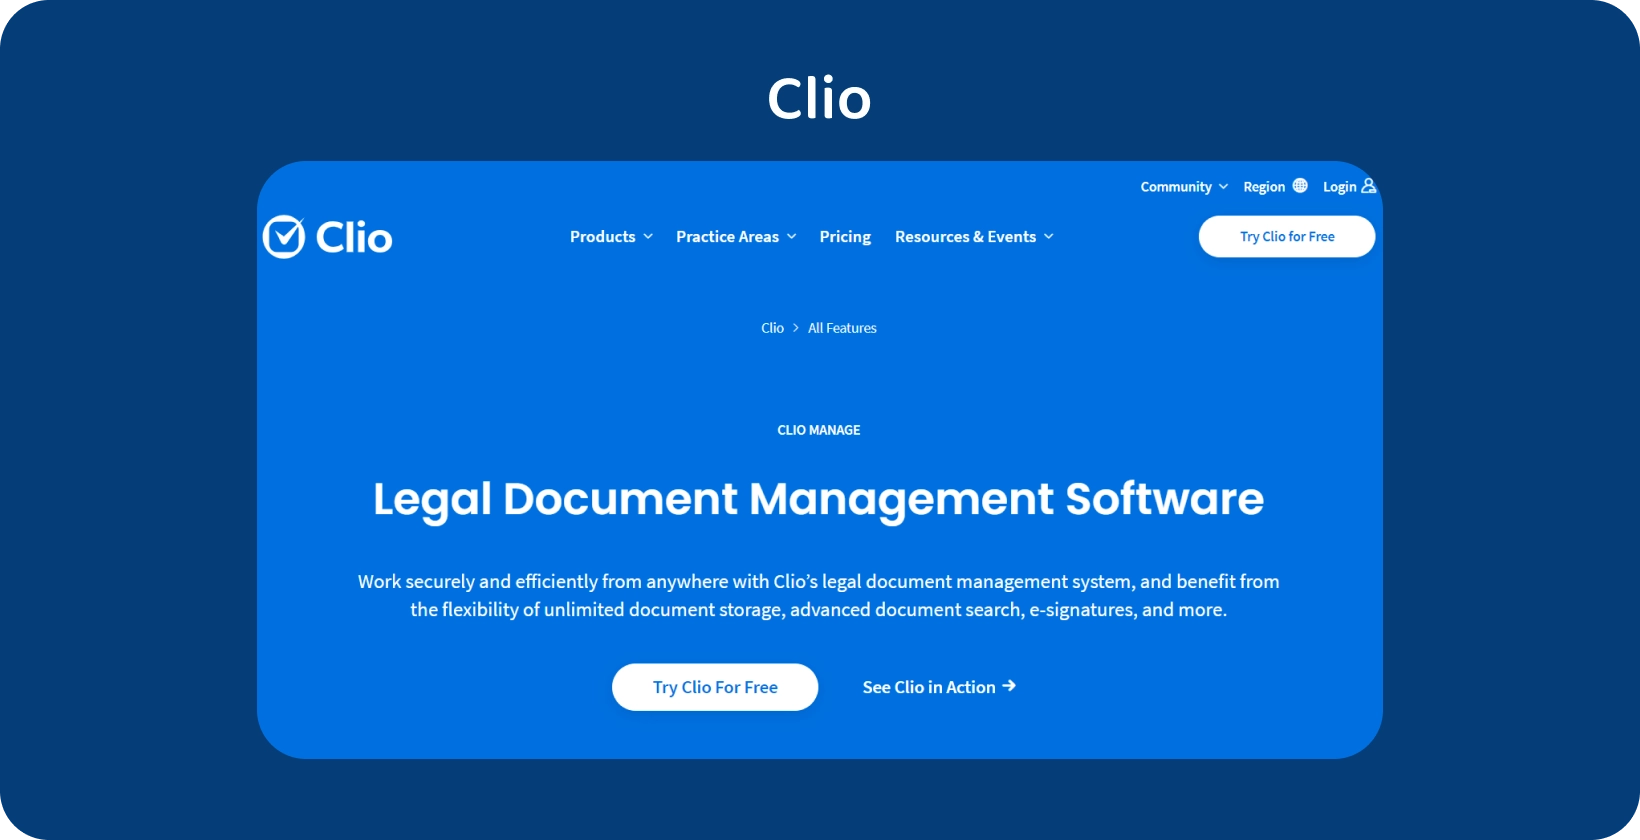 L’interface utilisateur de Clio présente son logiciel de gestion de documents juridiques, optimisant la gestion des documents organisés.